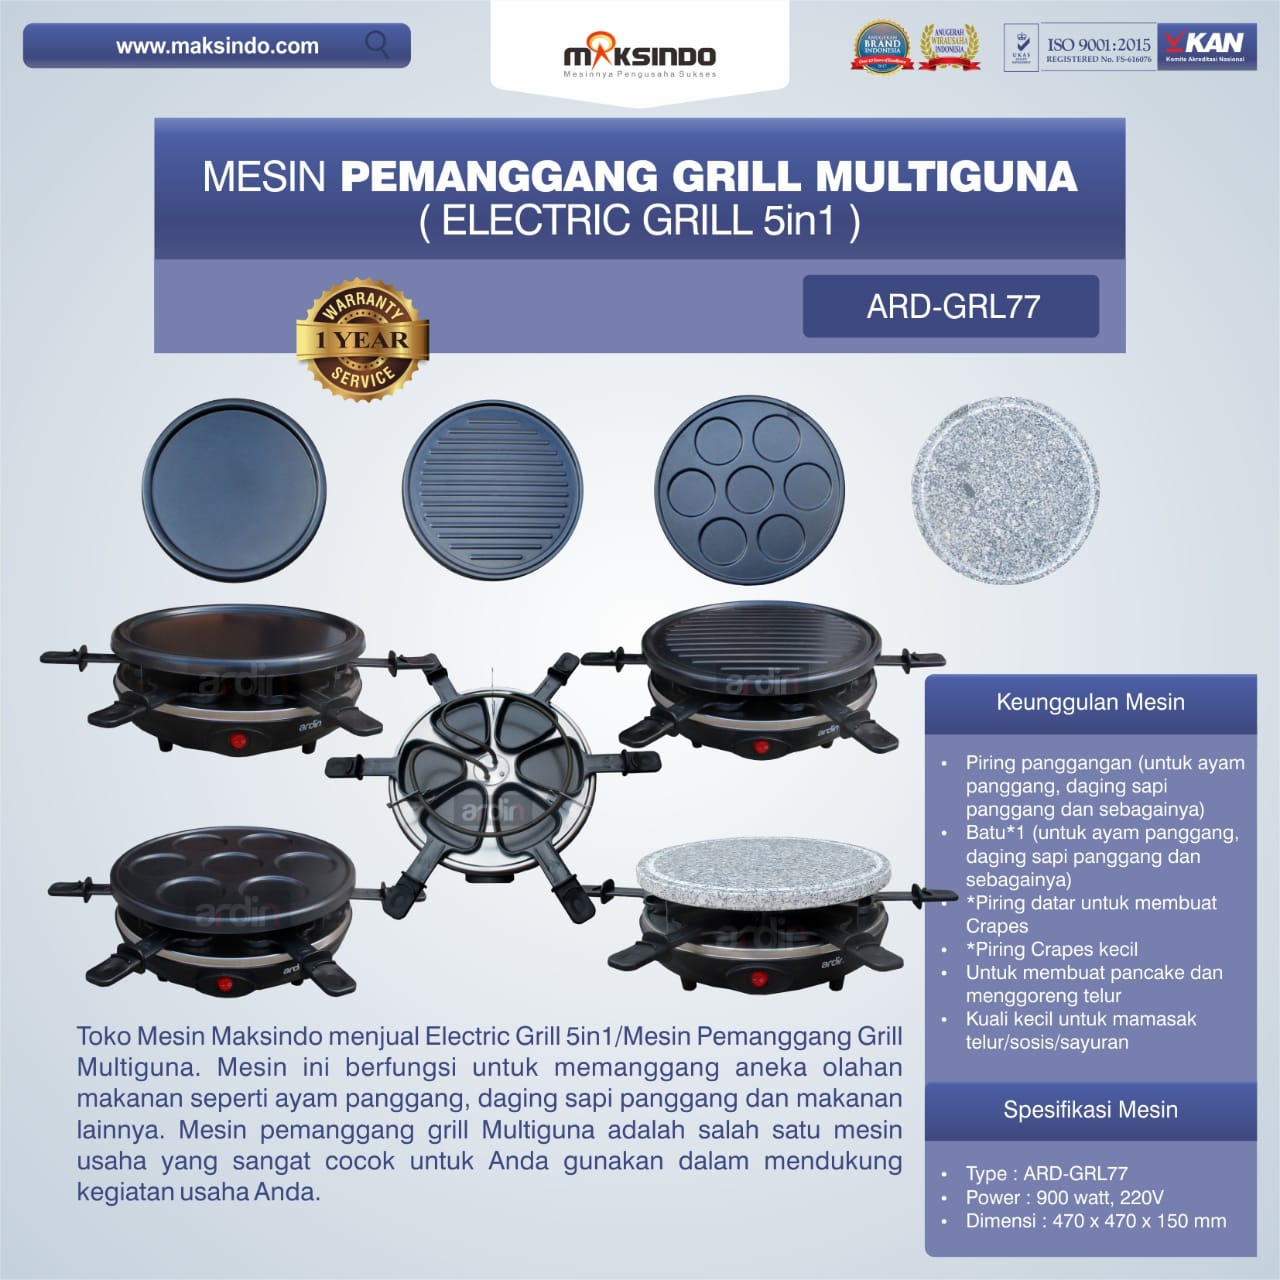 Jual Mesin Pemanggang Grill Multiguna (Electric Grill 5in1) ARD-GRL77 Di Bogor